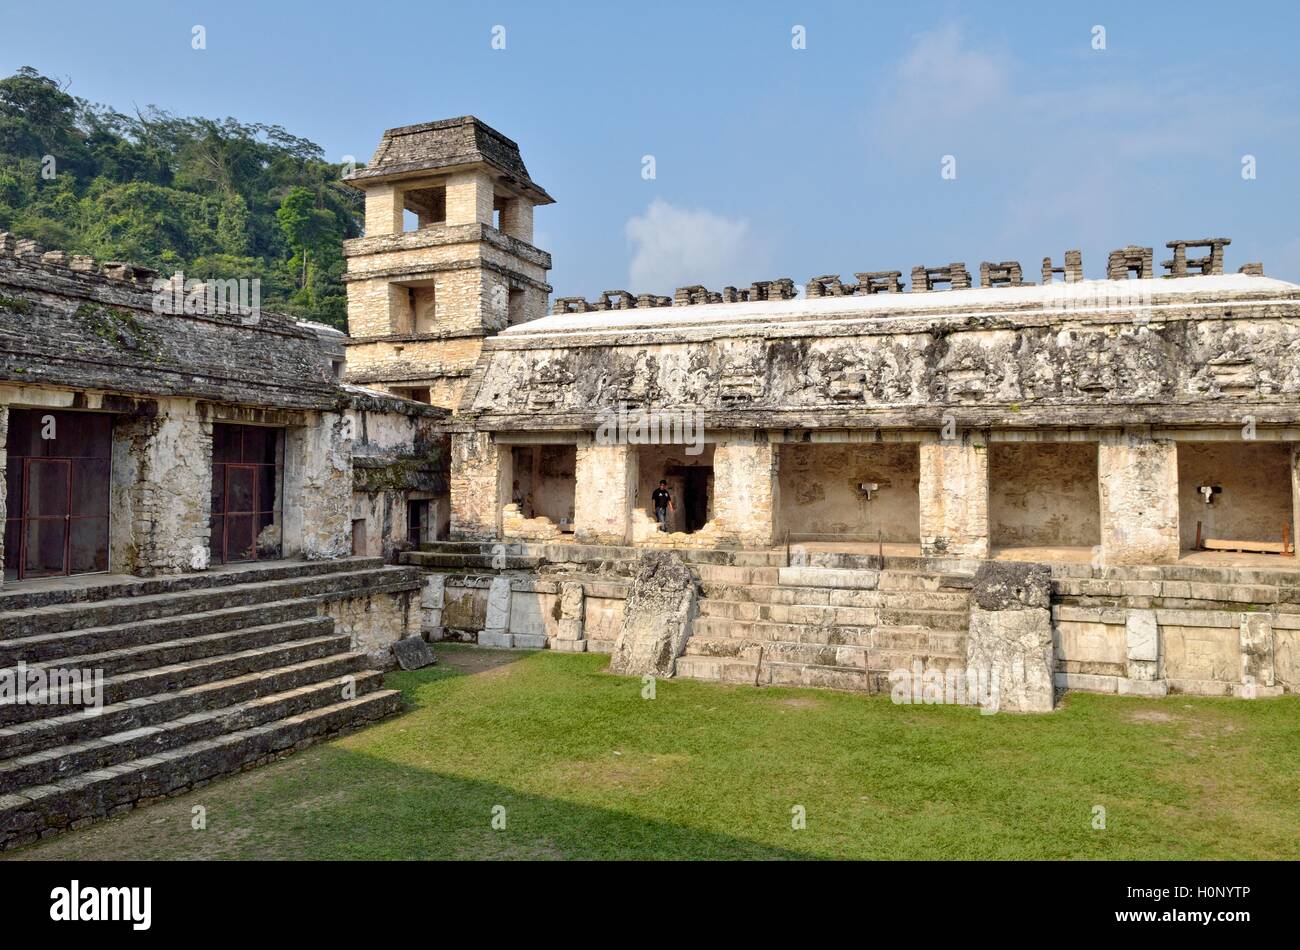 Patio de los Cautivos with tower, El Palacio, Mayan ruins of Palenque, Chiapas, Mexico Stock Photo